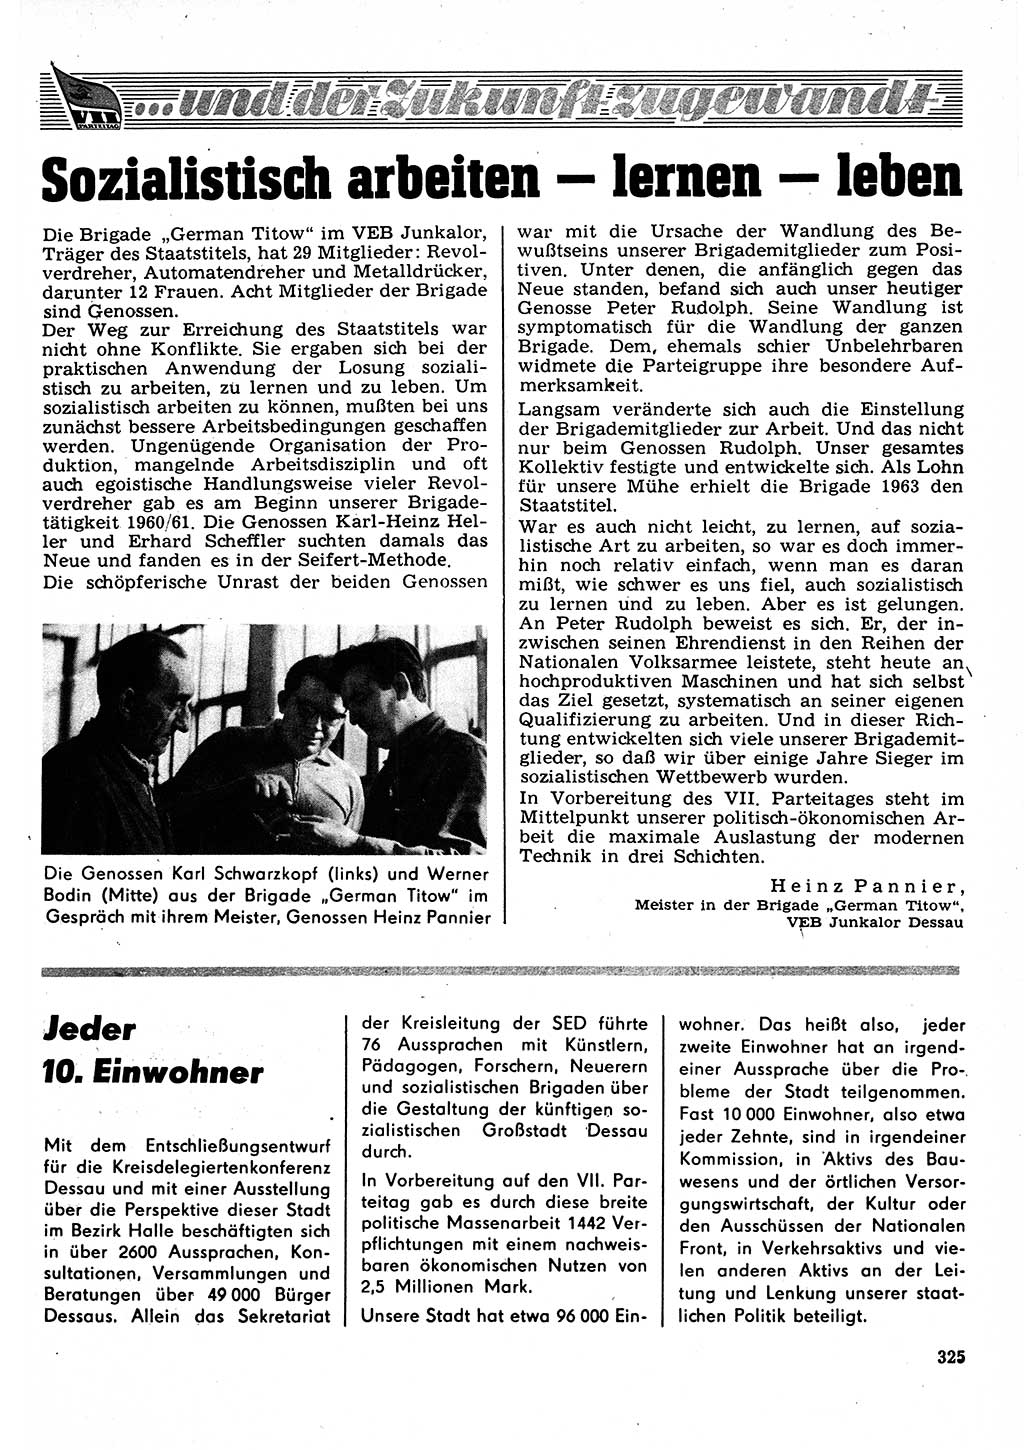 Neuer Weg (NW), Organ des Zentralkomitees (ZK) der SED (Sozialistische Einheitspartei Deutschlands) für Fragen des Parteilebens, 22. Jahrgang [Deutsche Demokratische Republik (DDR)] 1967, Seite 325 (NW ZK SED DDR 1967, S. 325)